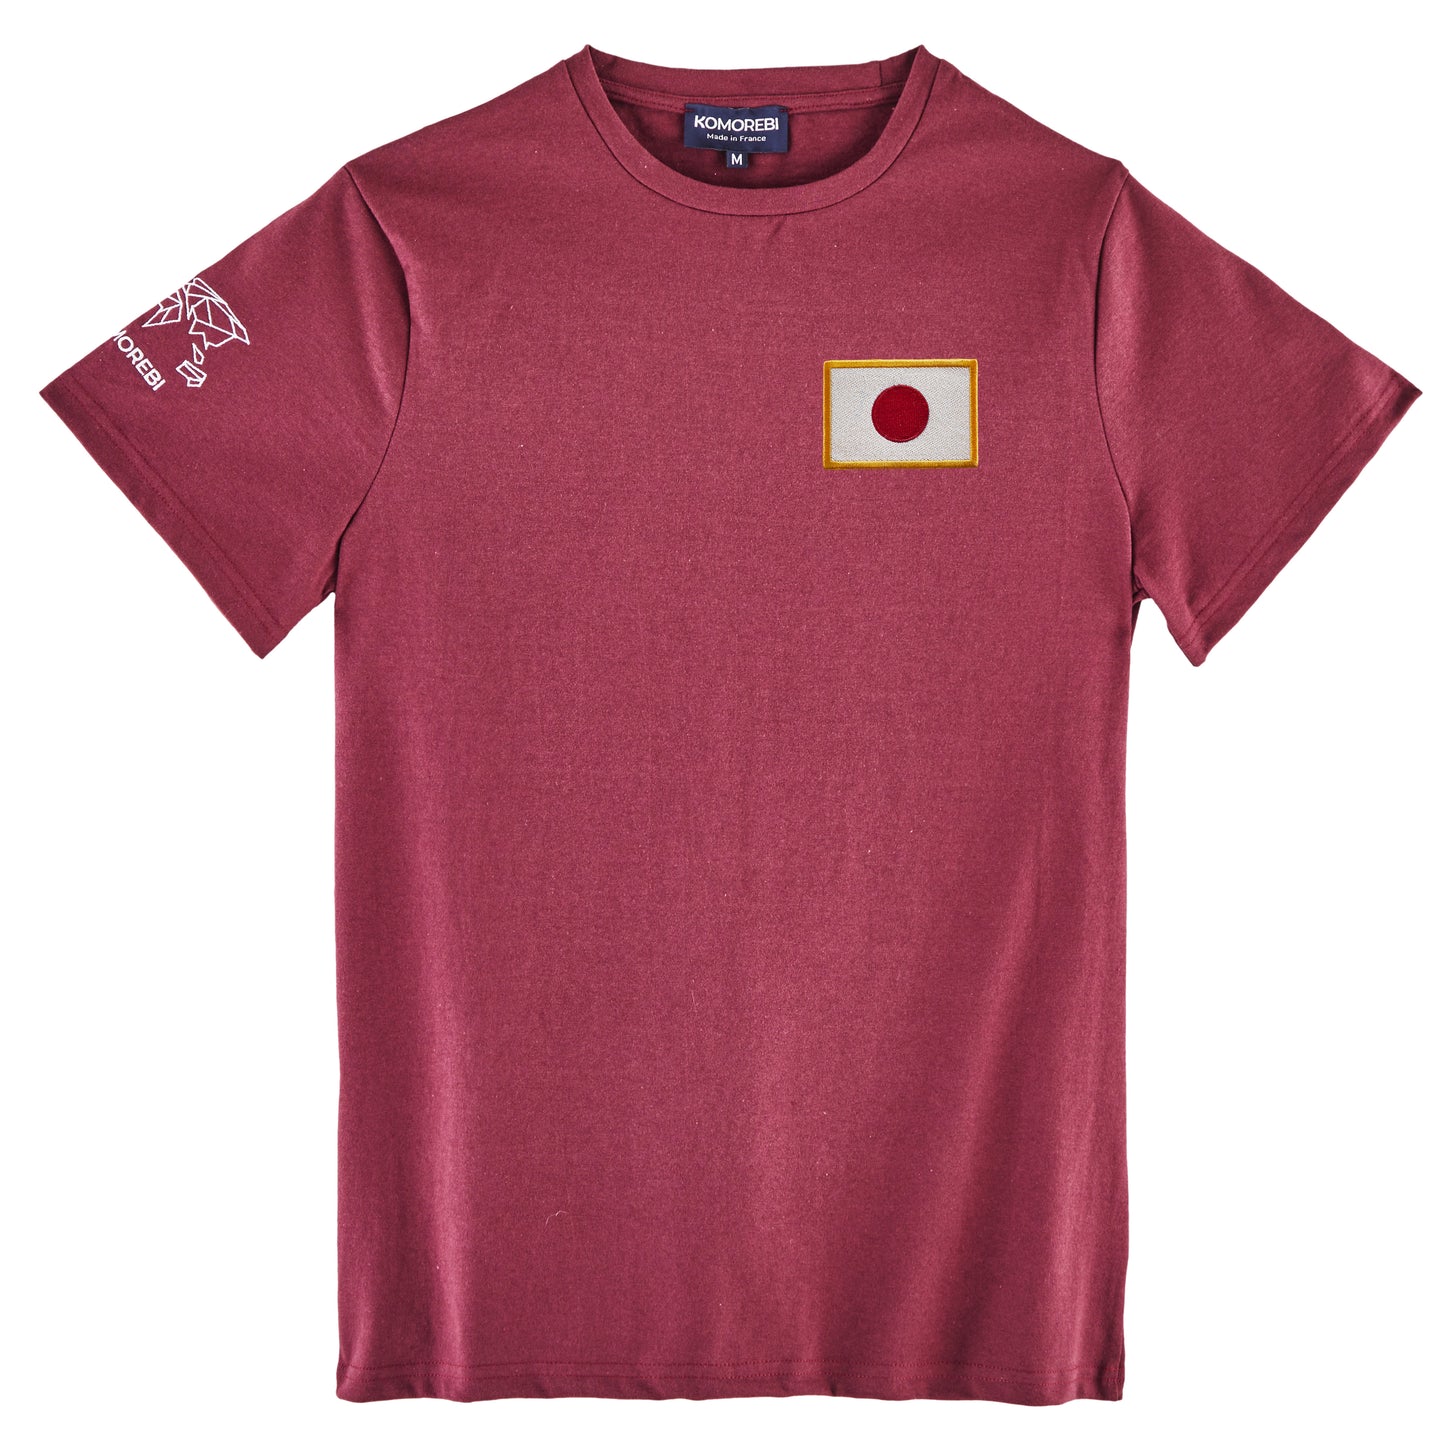 Japon • T-shirt